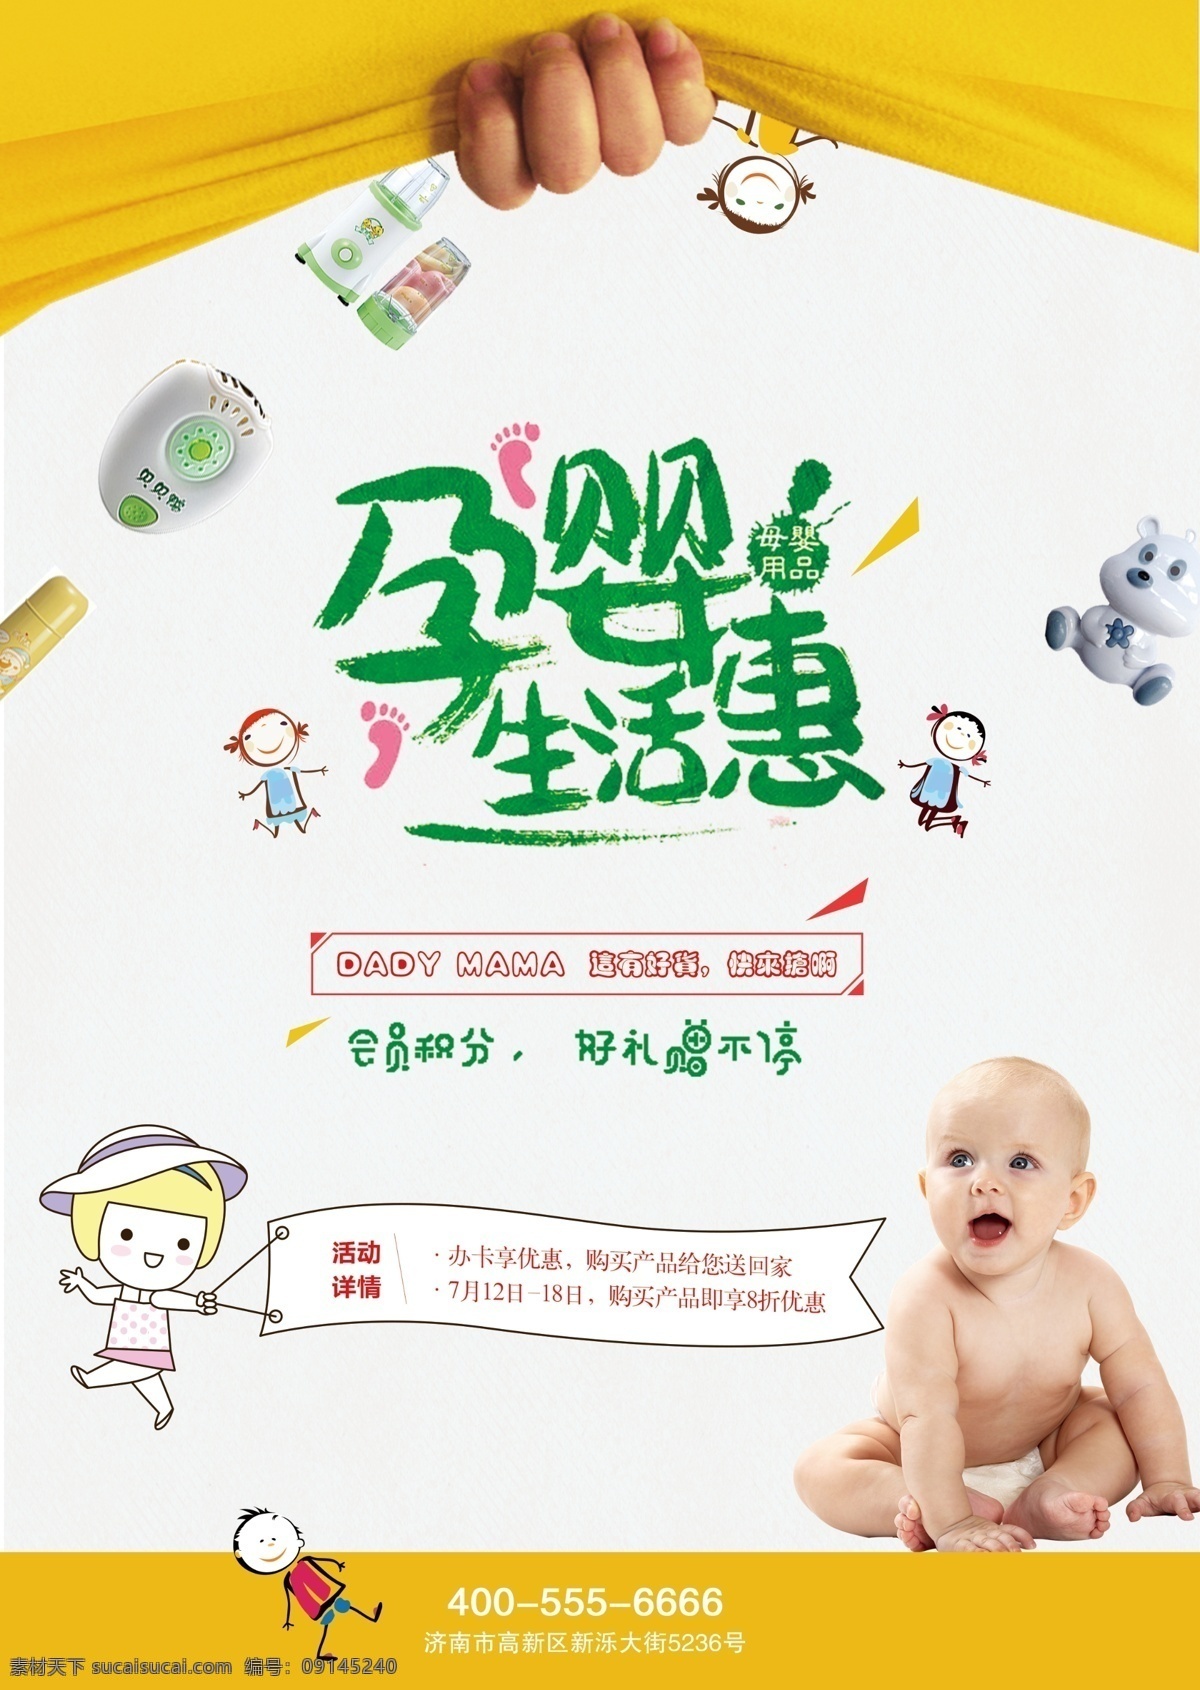 母婴 用品 宣传页 母婴用品单页 母婴宣传页 母婴单页 海报 母婴海报